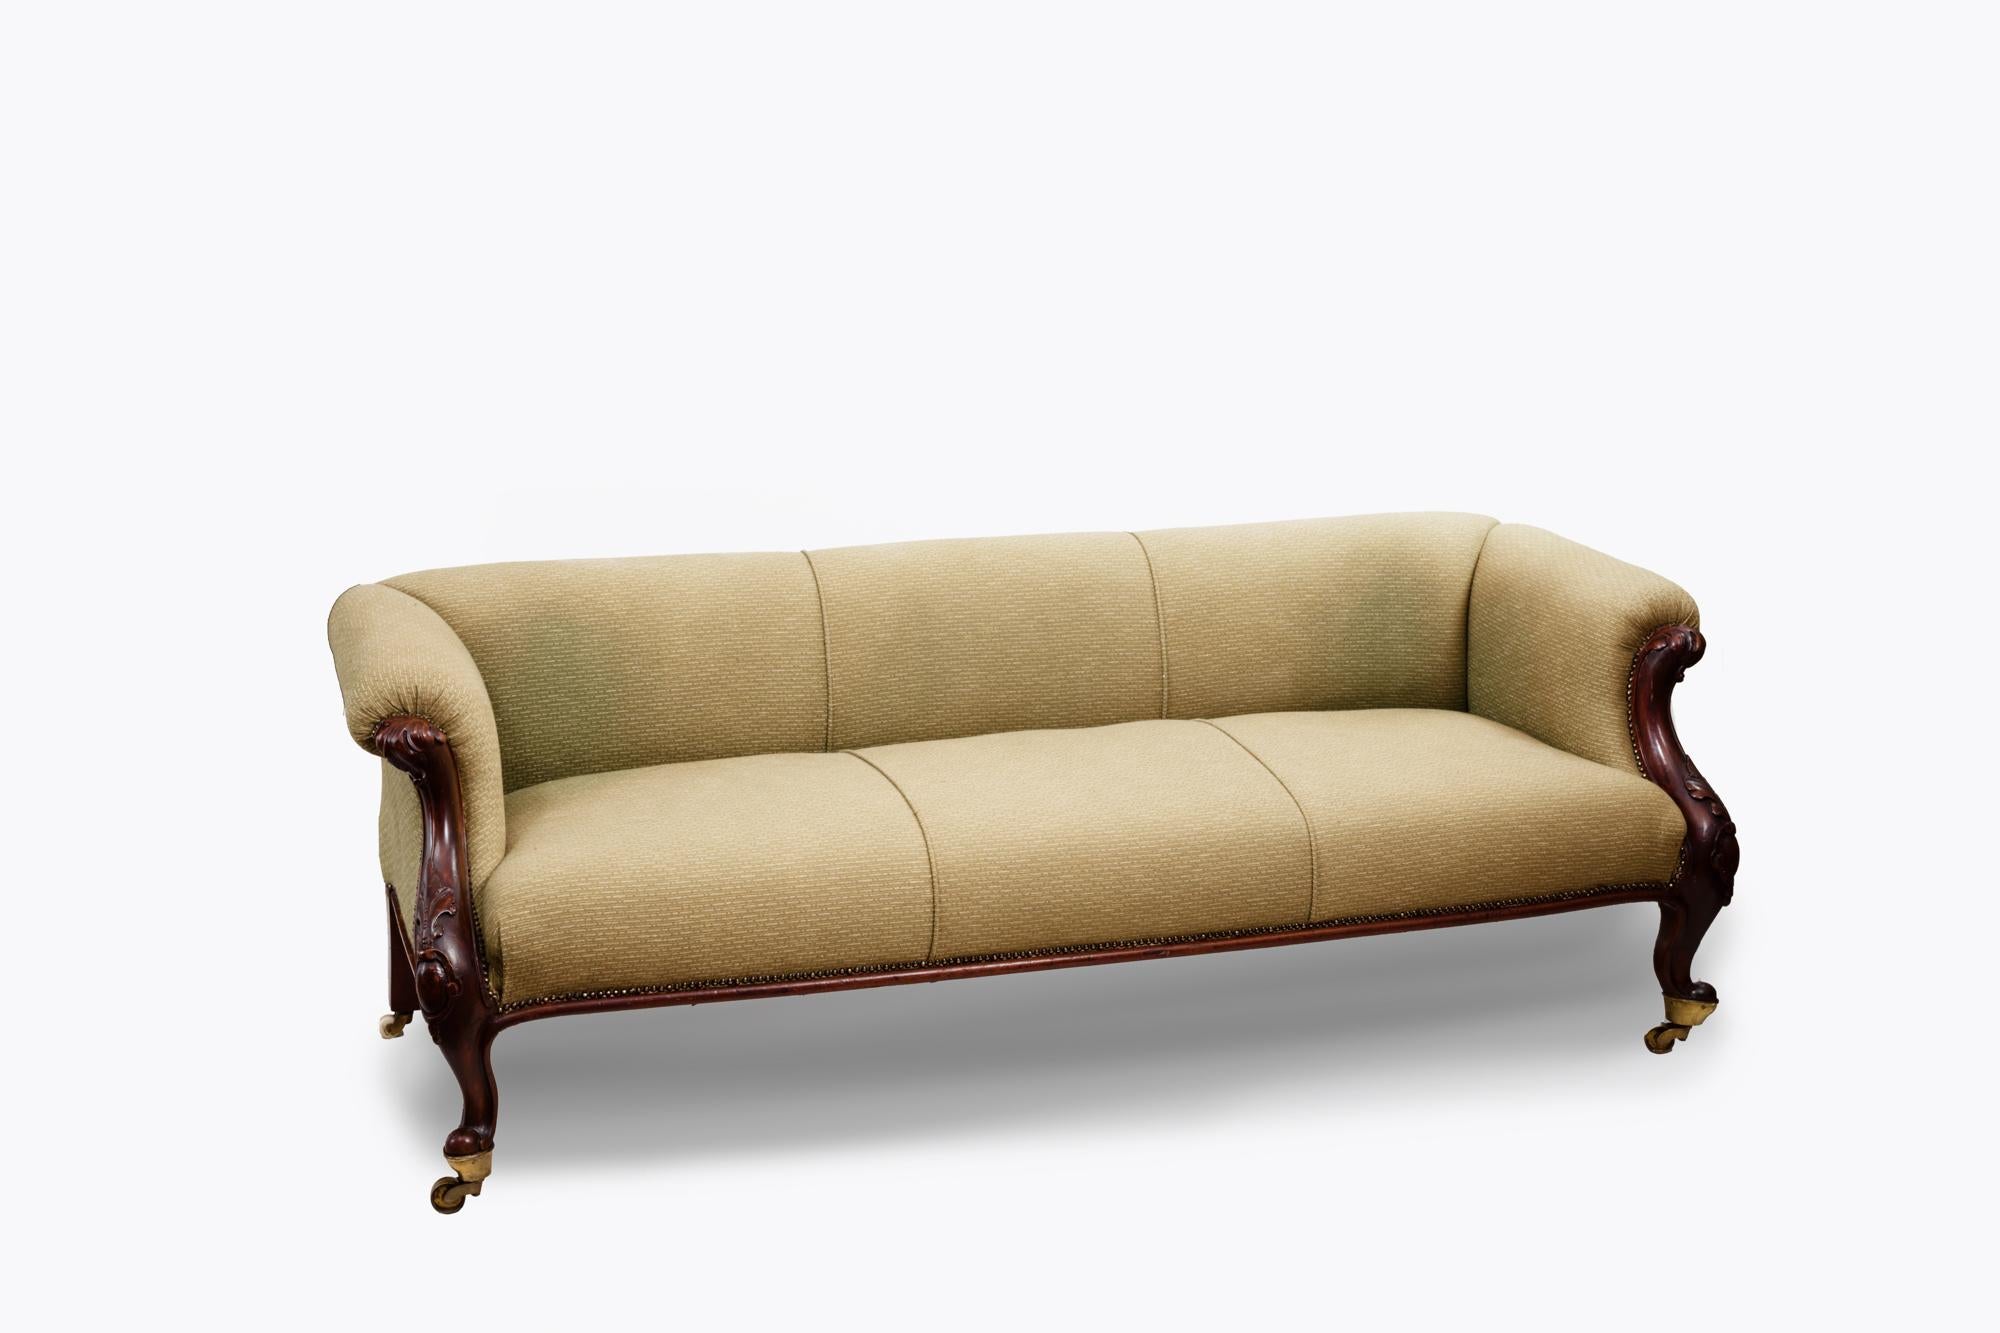 Sofa aus dem 19. Jahrhundert mit niedriger Rückenlehne und geschnitzten Armlehnen, über einem langen Sitz, der auf Kabriole-Beinen mit Akanthusblatt-Details steht und auf originalen Messingrollen endet.